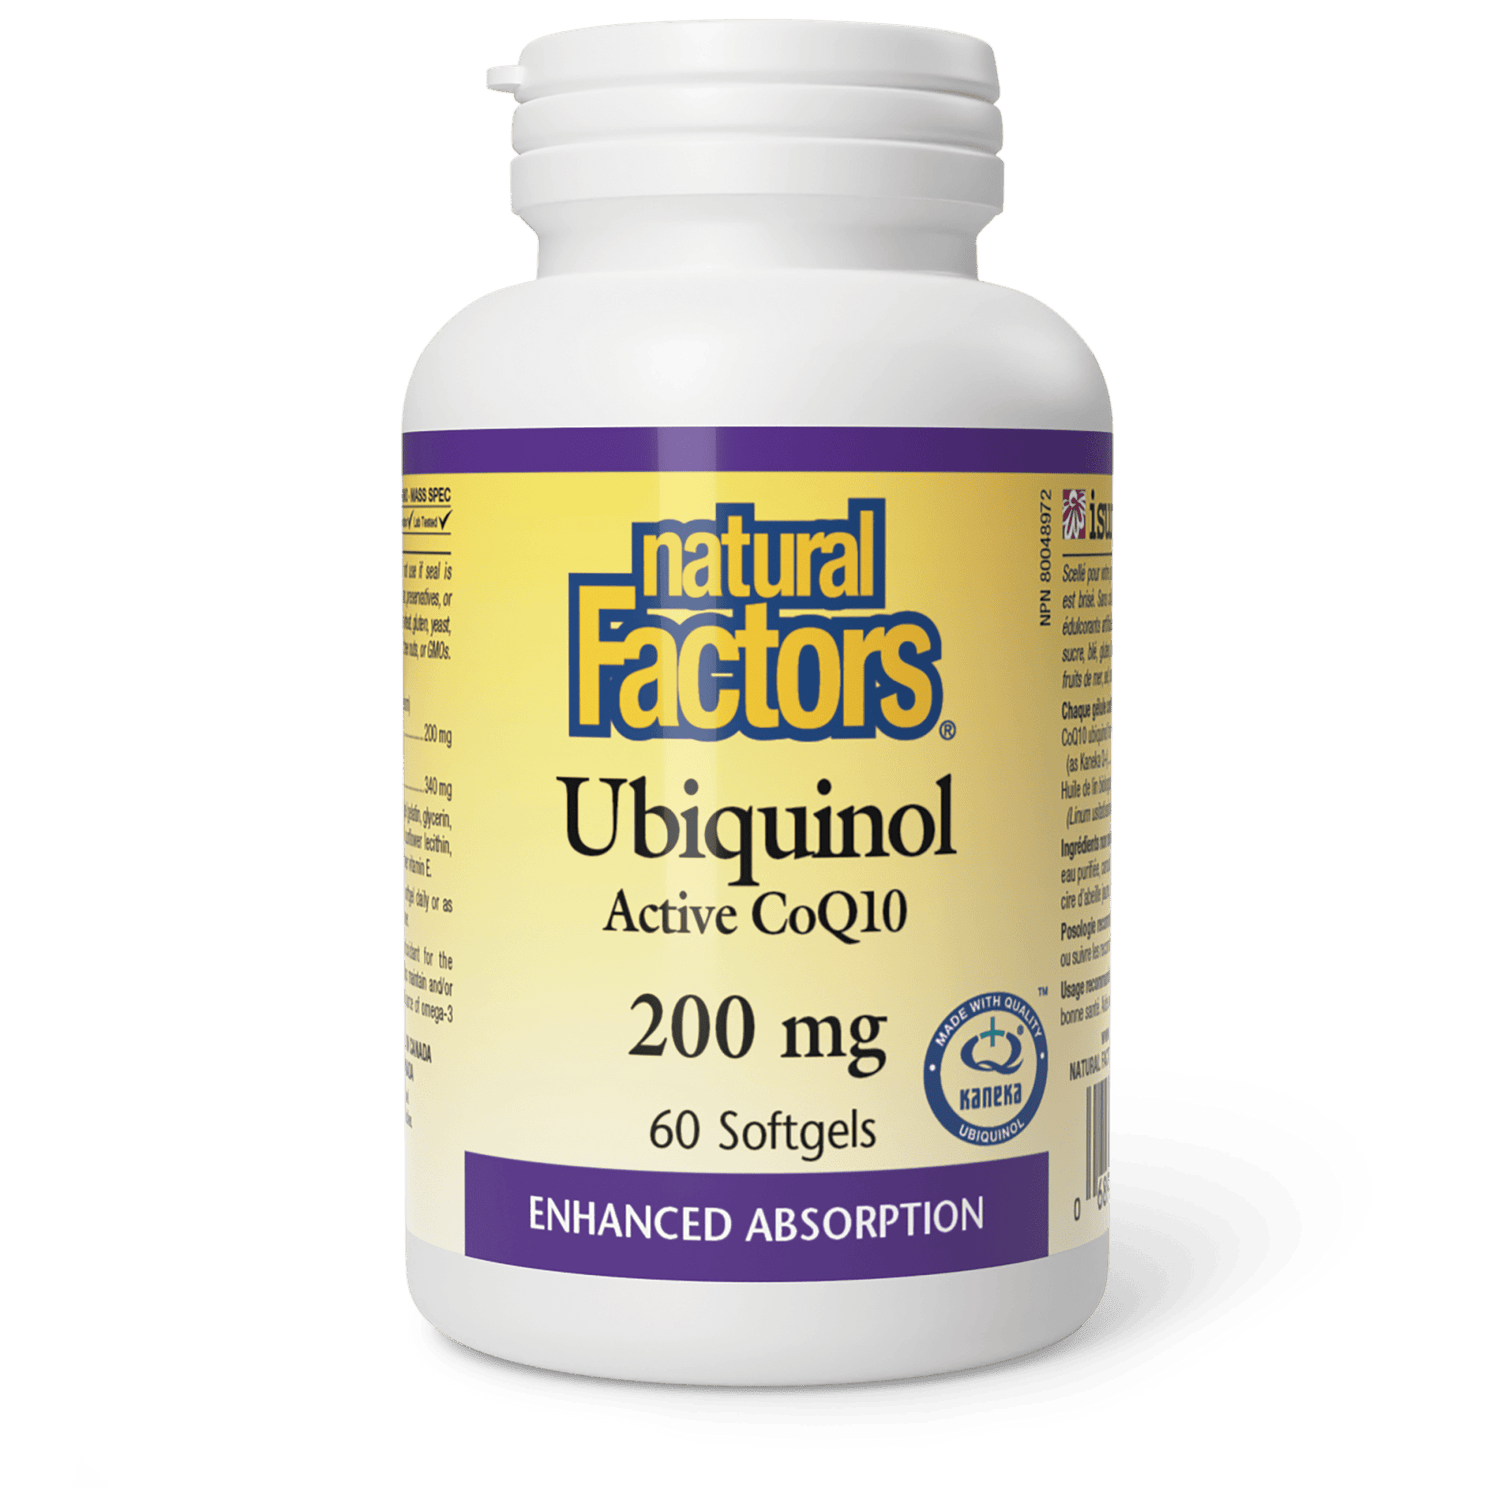 Ubiquinol Active CoQ10 200 mg, Natural Factors|v|image|20730